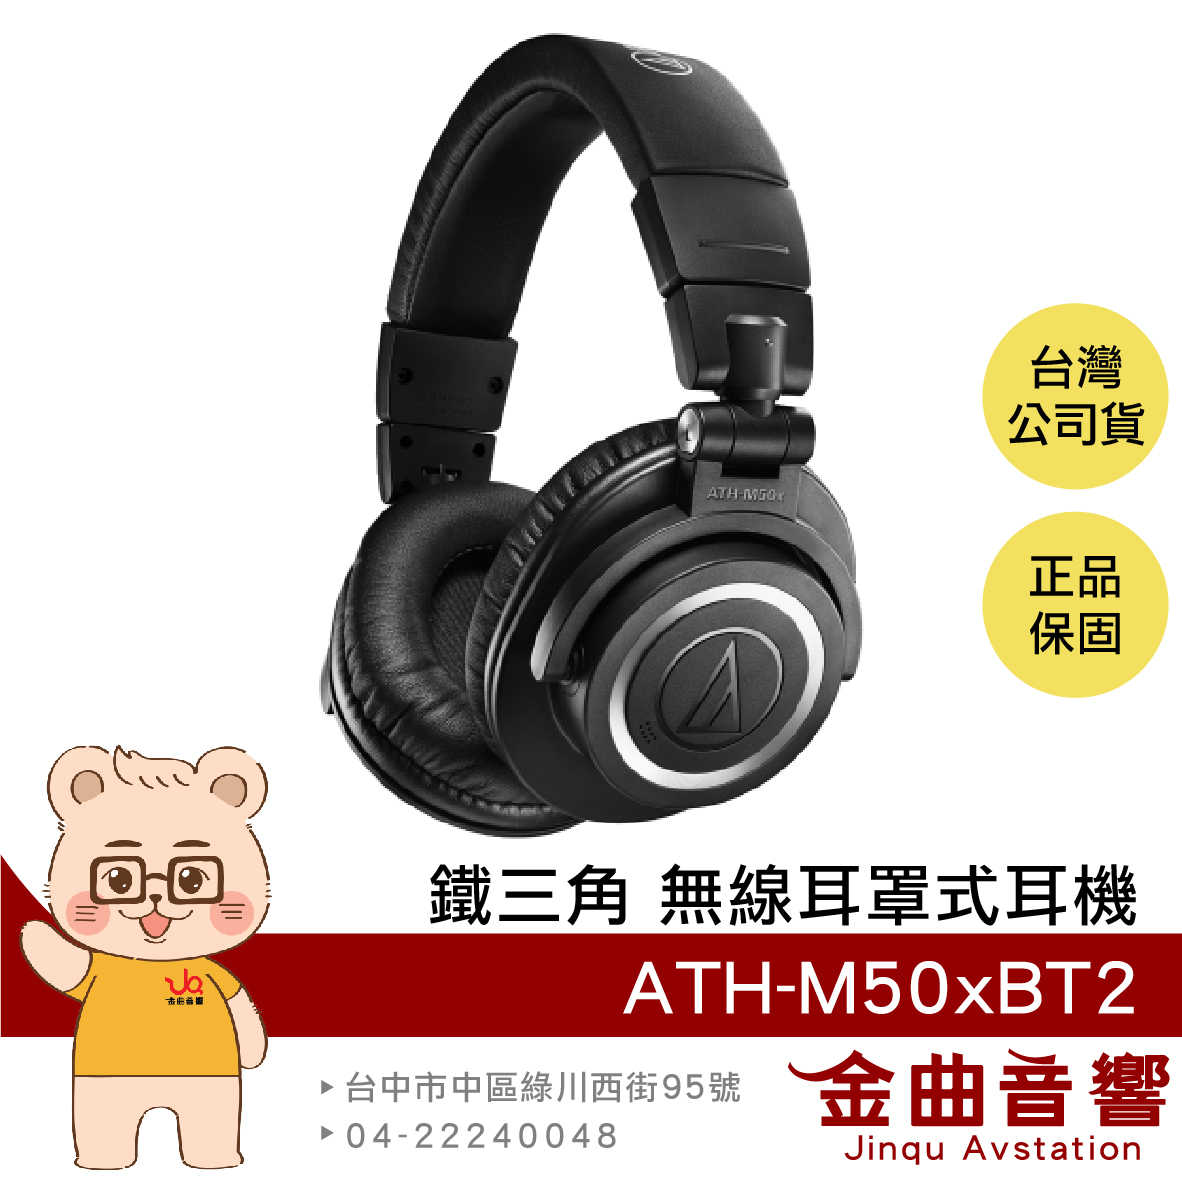 【預購7月】鐵三角 ATH-M50xBT2 黑色 藍芽 耳罩式 耳機 無線 低延遲 | 金曲音響